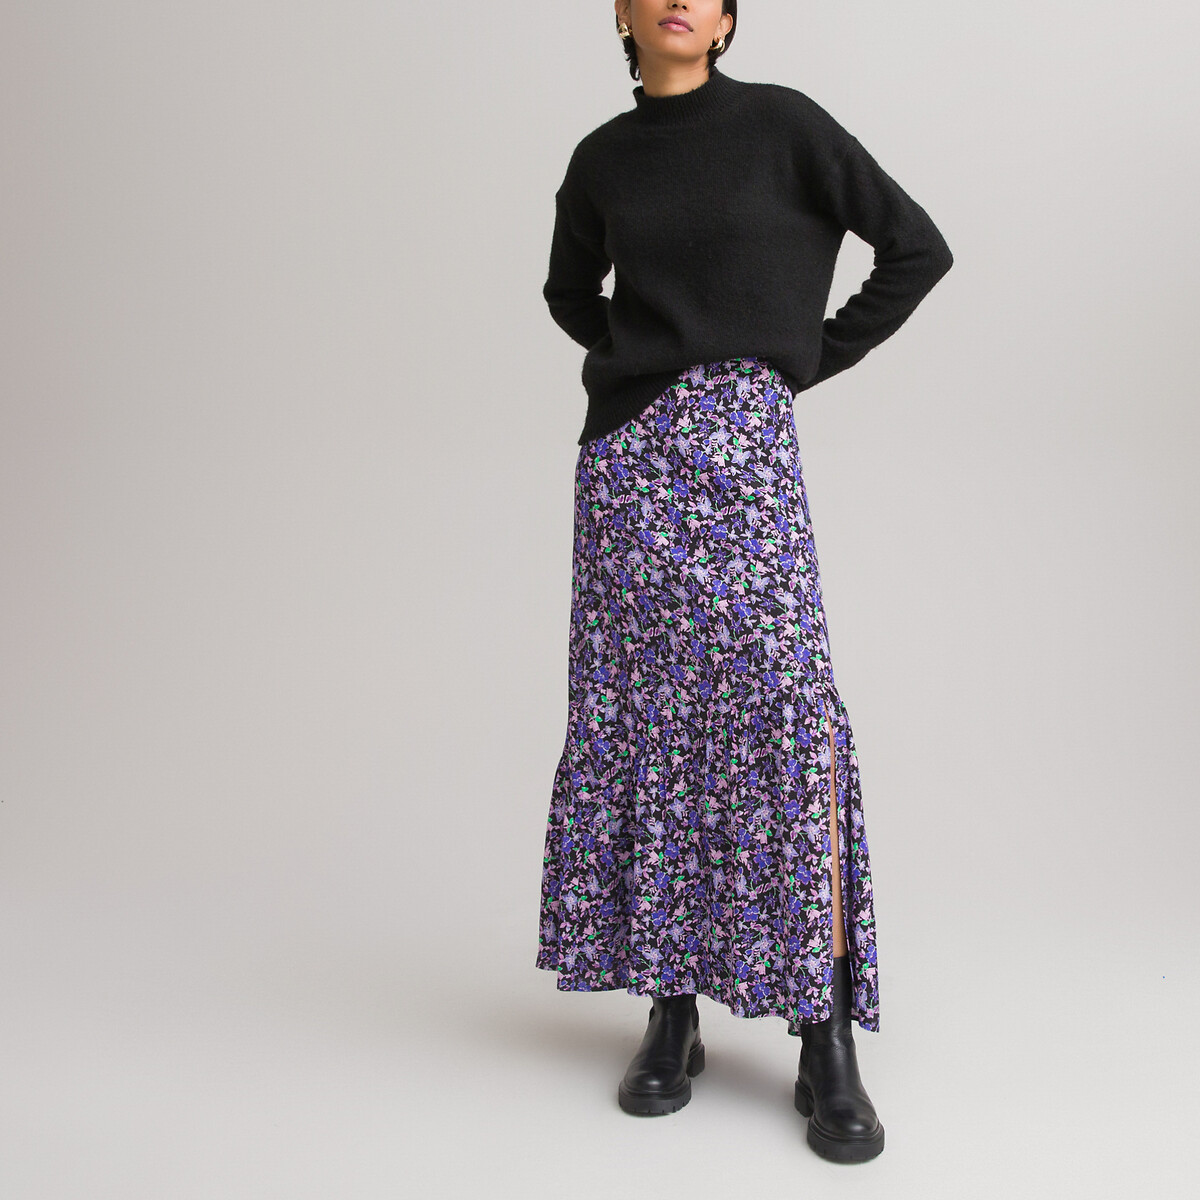 Minijupe à fleurs en jacquard Farfetch Fille Vêtements Jupes Jupes imprimées 